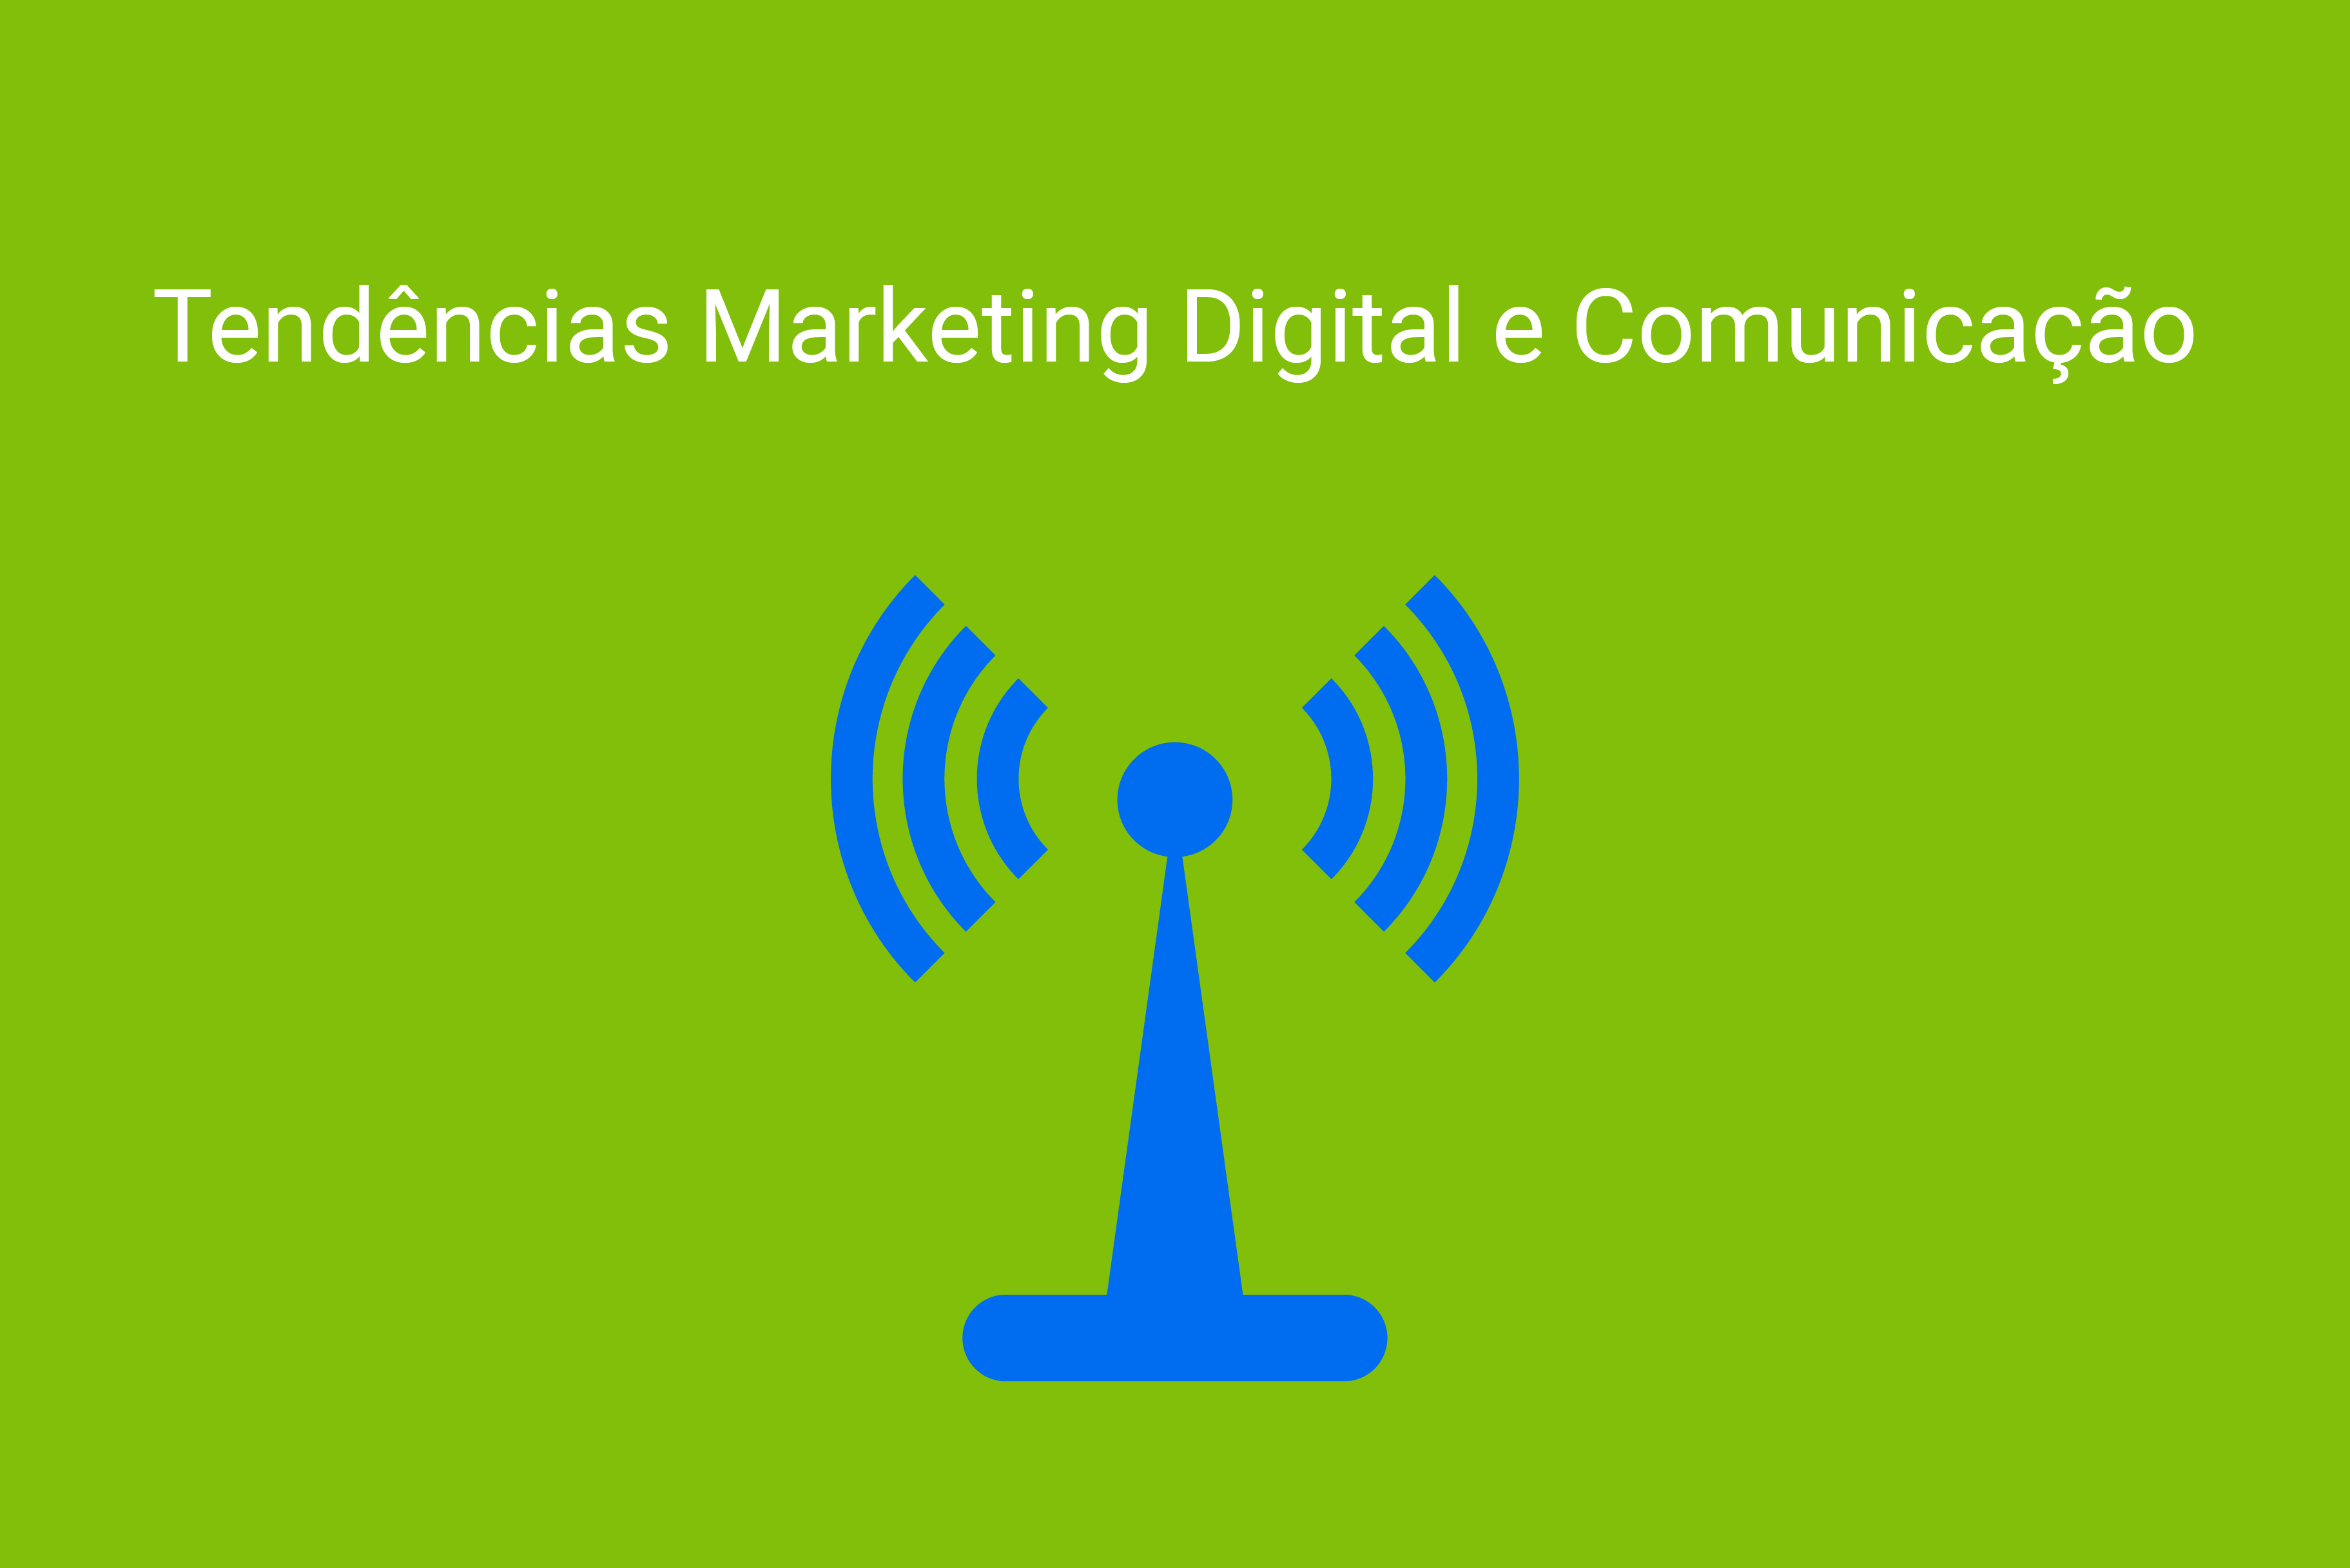 Tendências e previsões para o marketing digital e comunicação em 2019